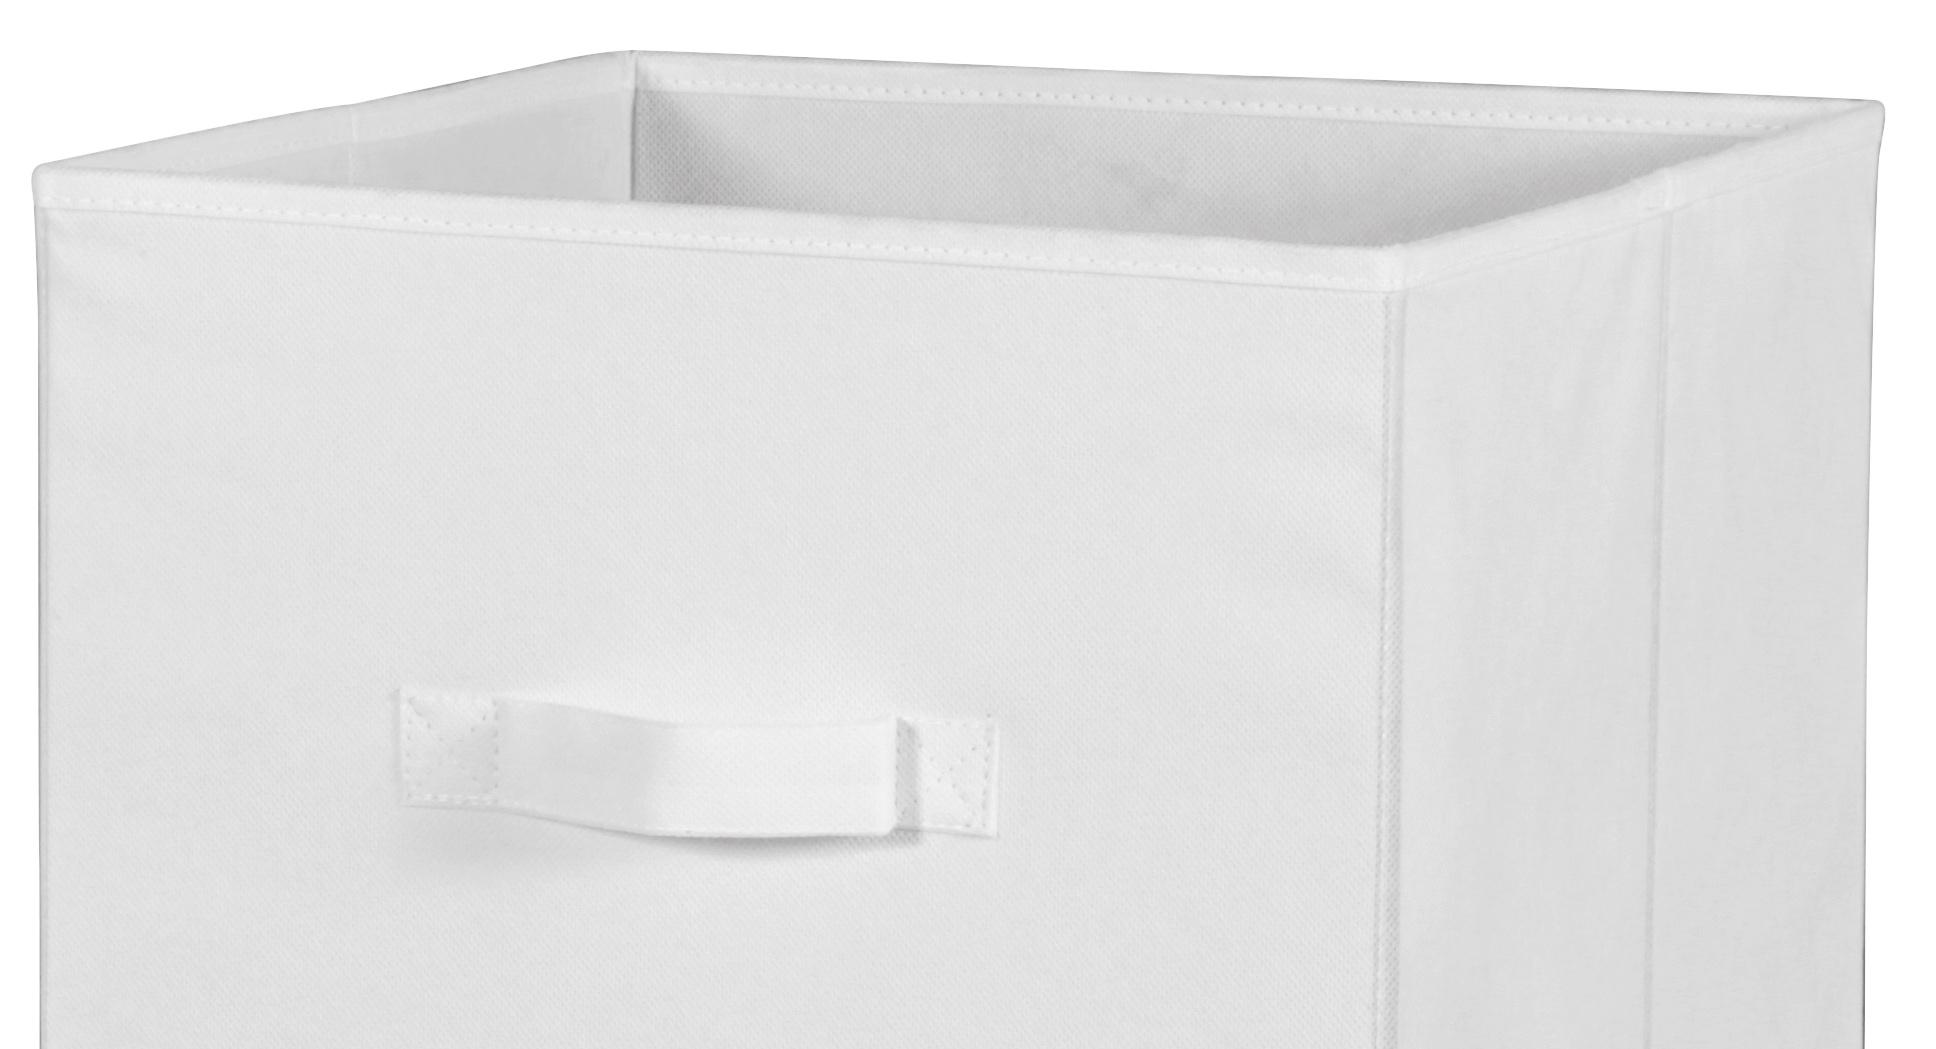 Faltbox Cliff Vlies Weiß 32x32x32 cm mit Tragegriff - Weiß, MODERN, Textil (32/32/32cm)